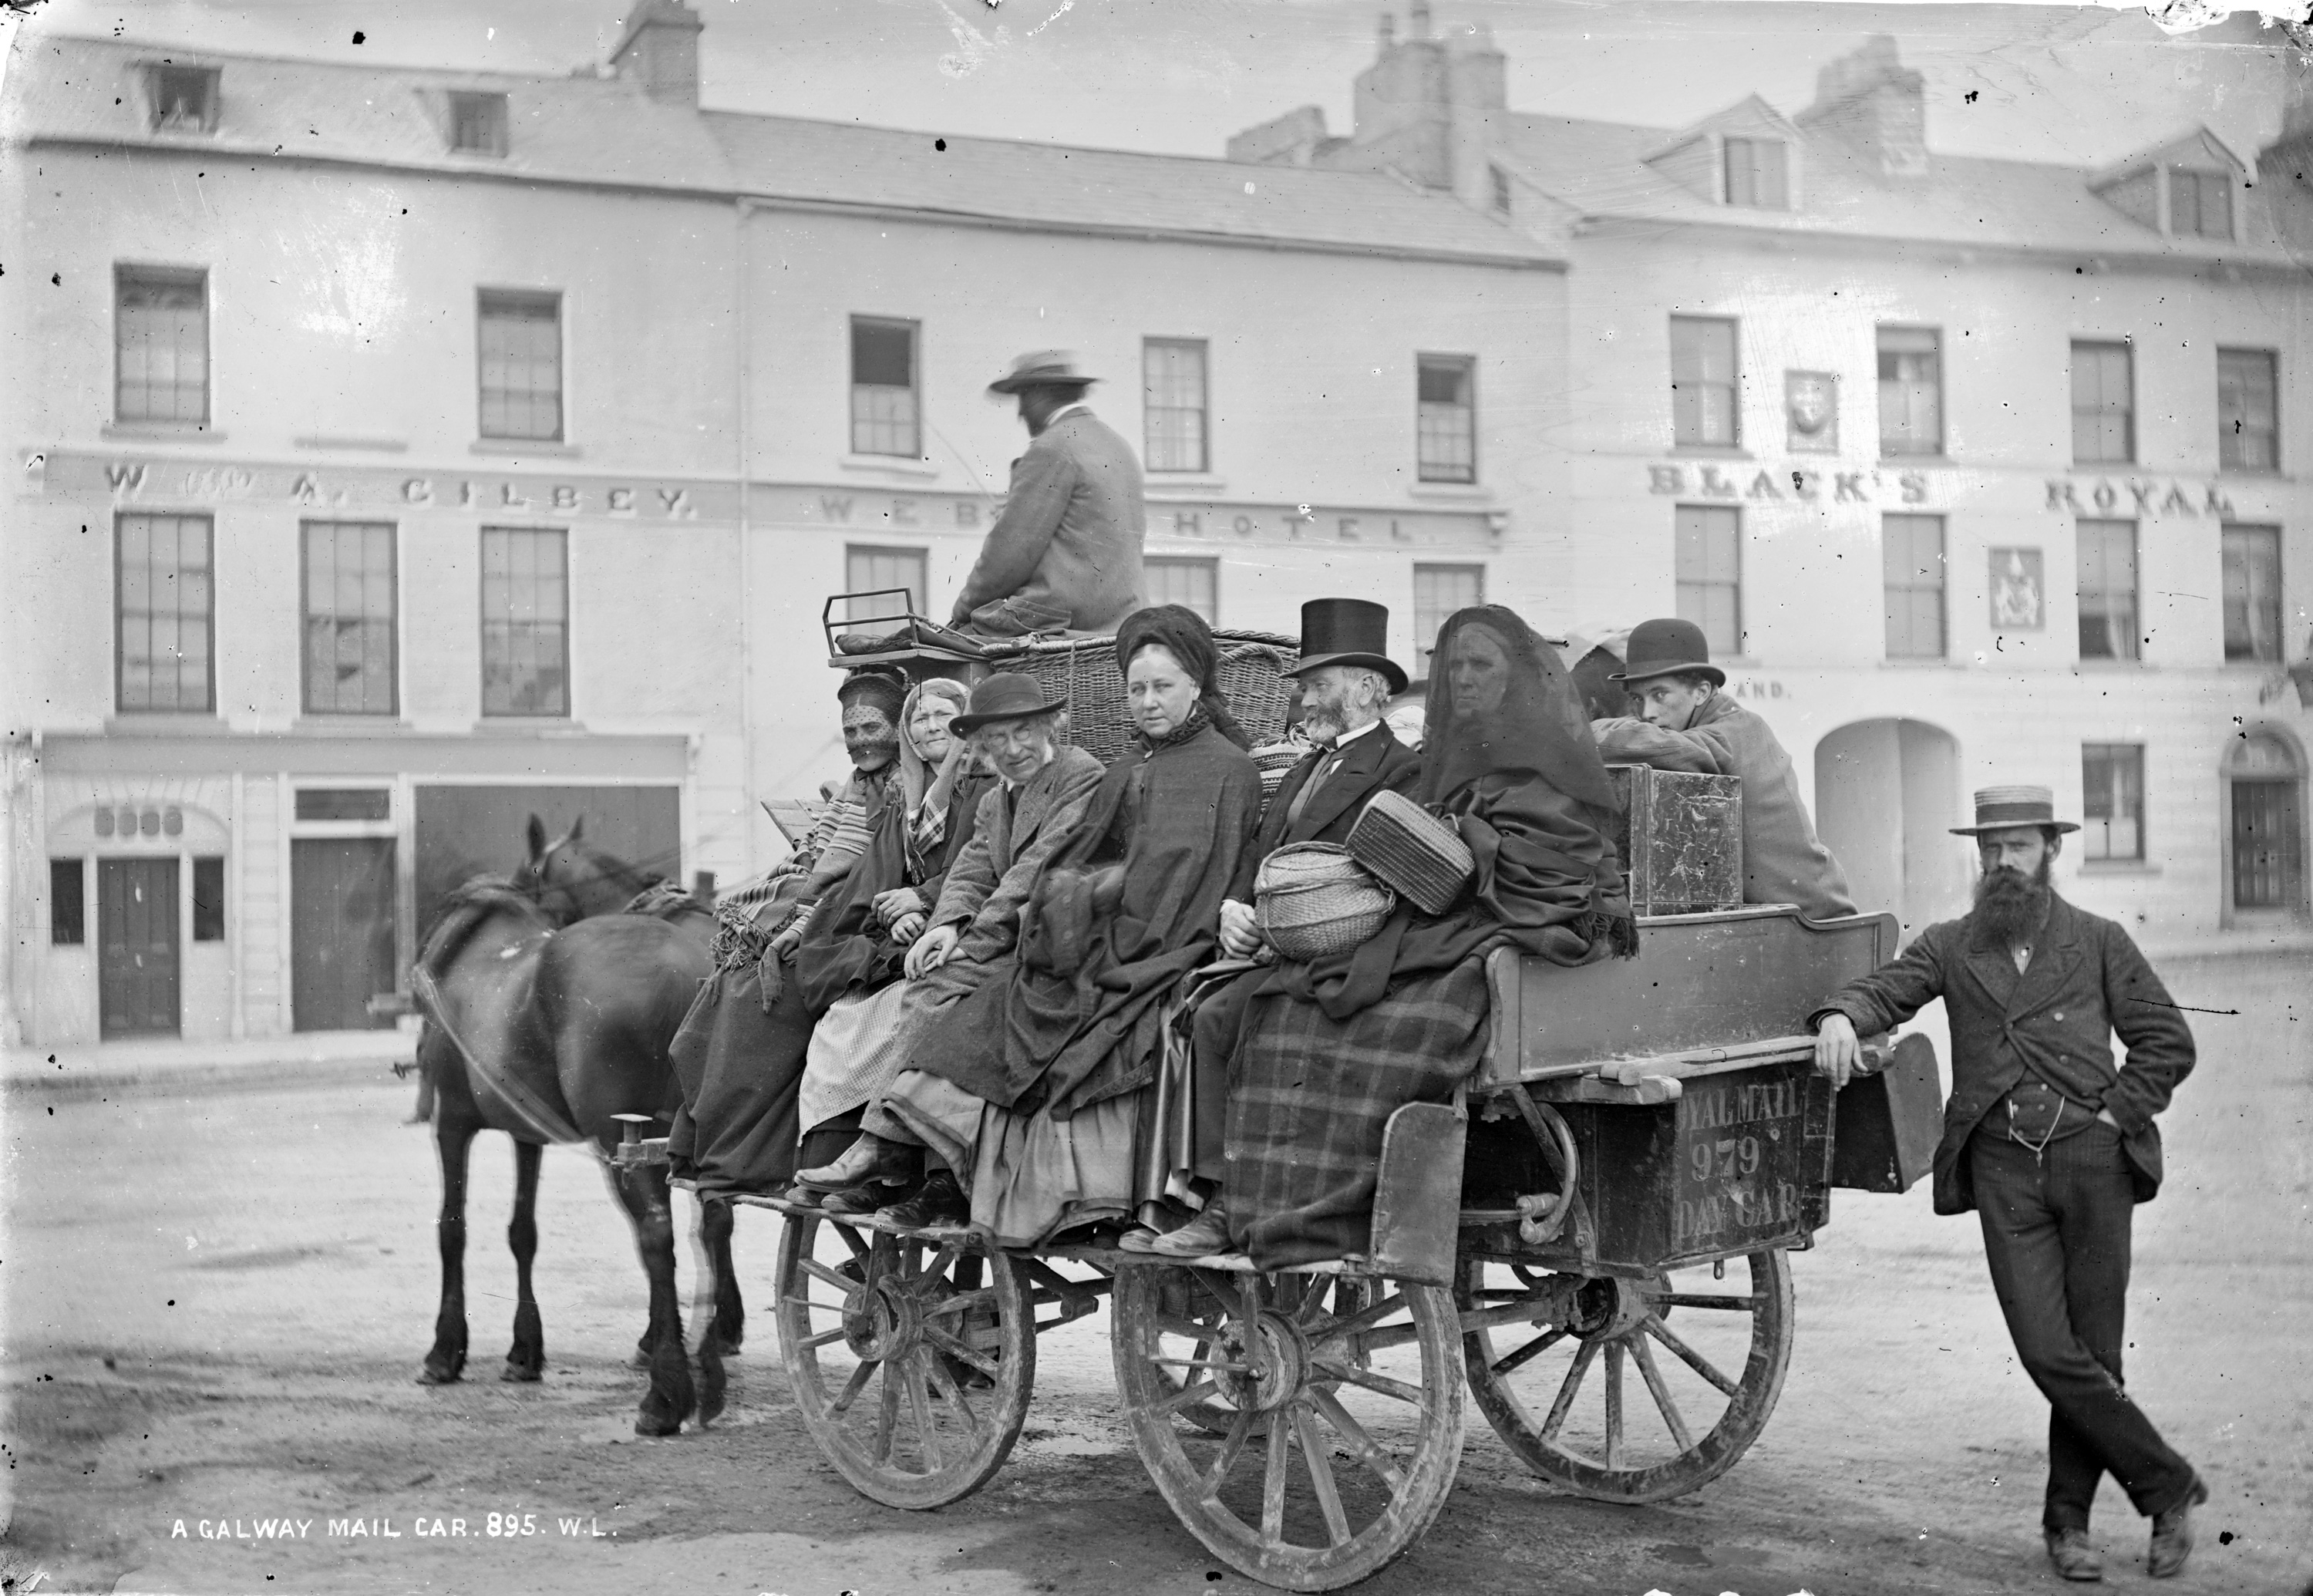 Un vagón de correo de Galway, en Eyre Square, entre 1880 y 1900. El Black's Hotel puede verse en el fondo. Fotografía de William Lawrence.
Cortesía de la Biblioteca Nacional de Irlanda.